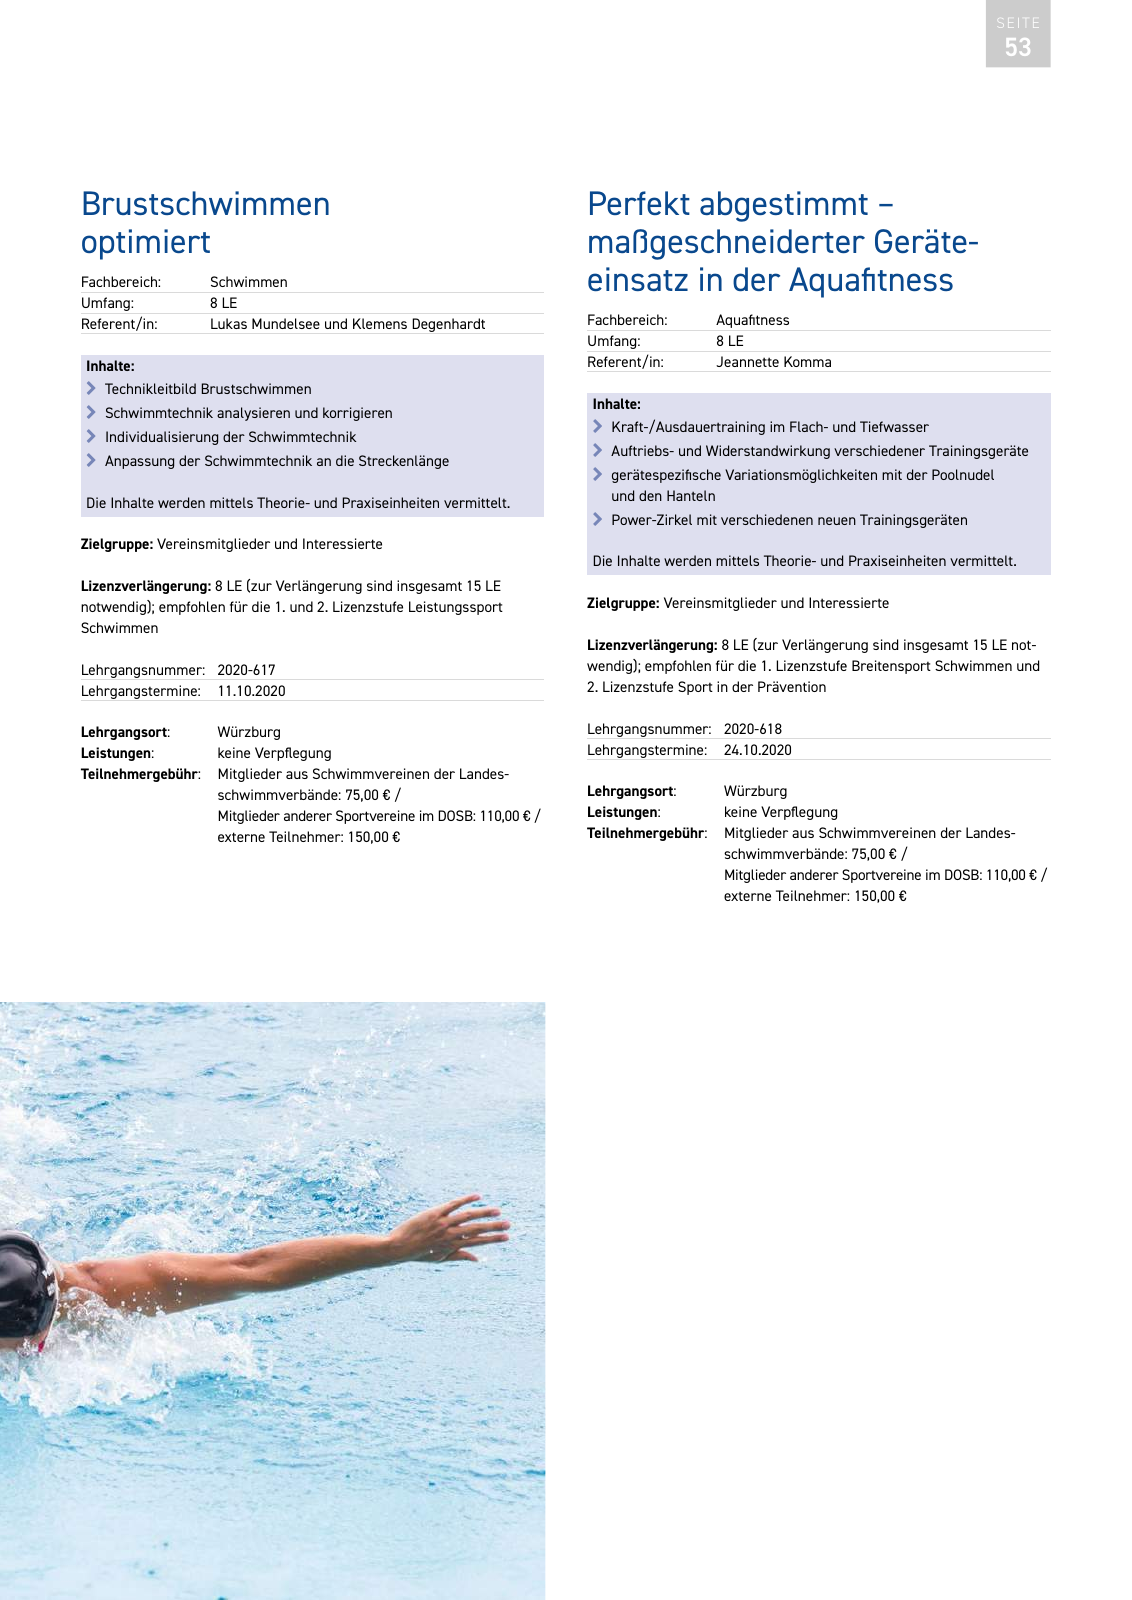 Vorschau Lehrgänge 2020 // Akademie des Schwimmsports Seite 53